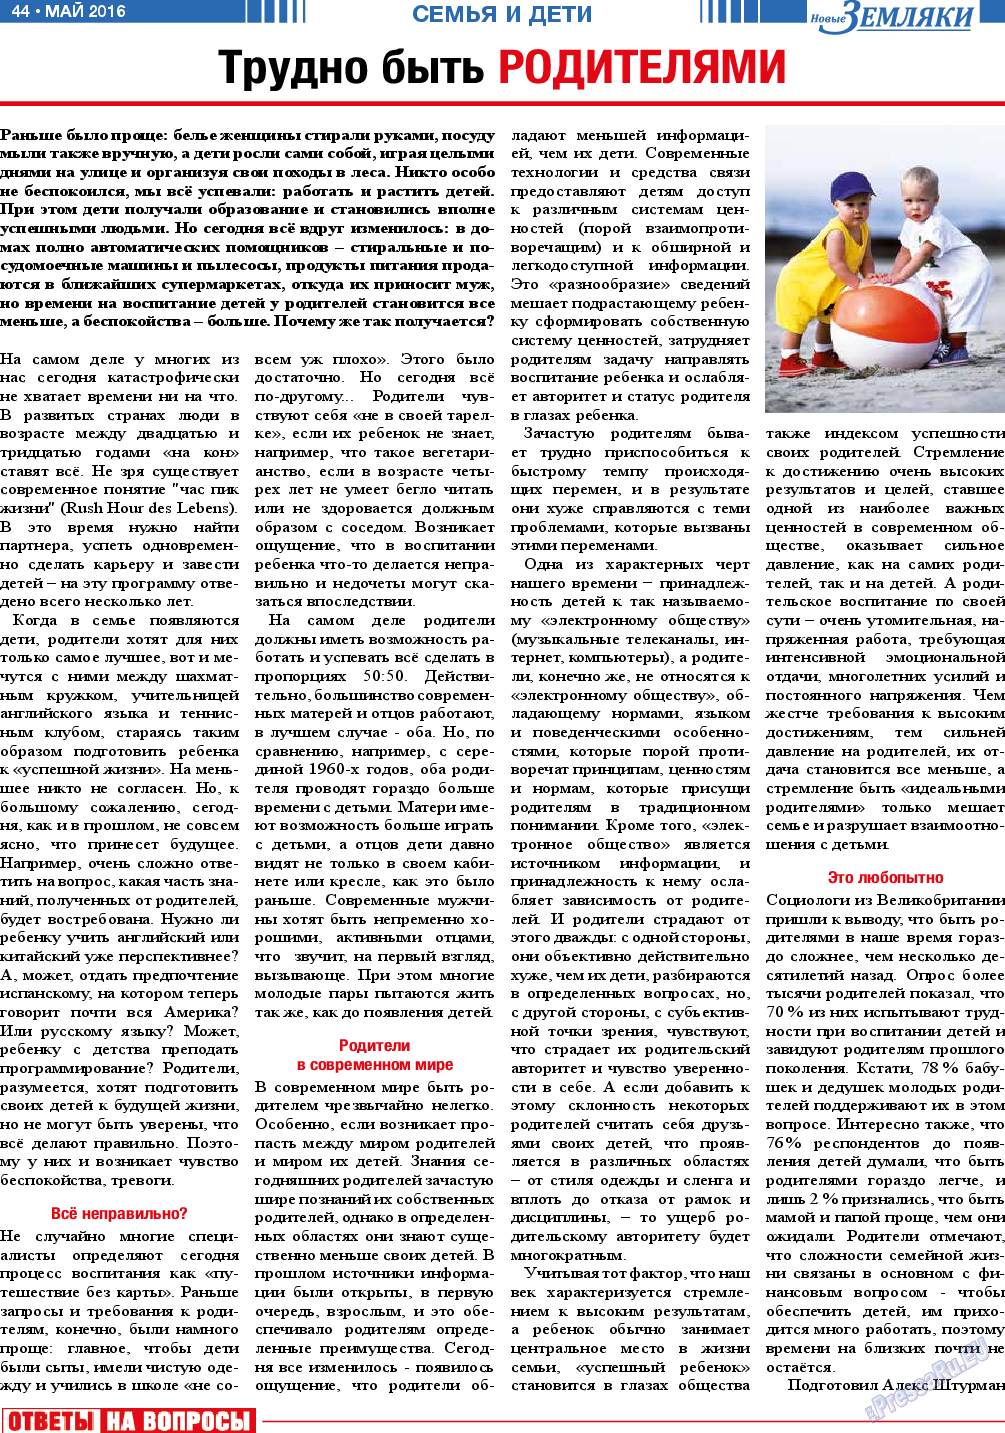 Новые Земляки, газета. 2016 №5 стр.44